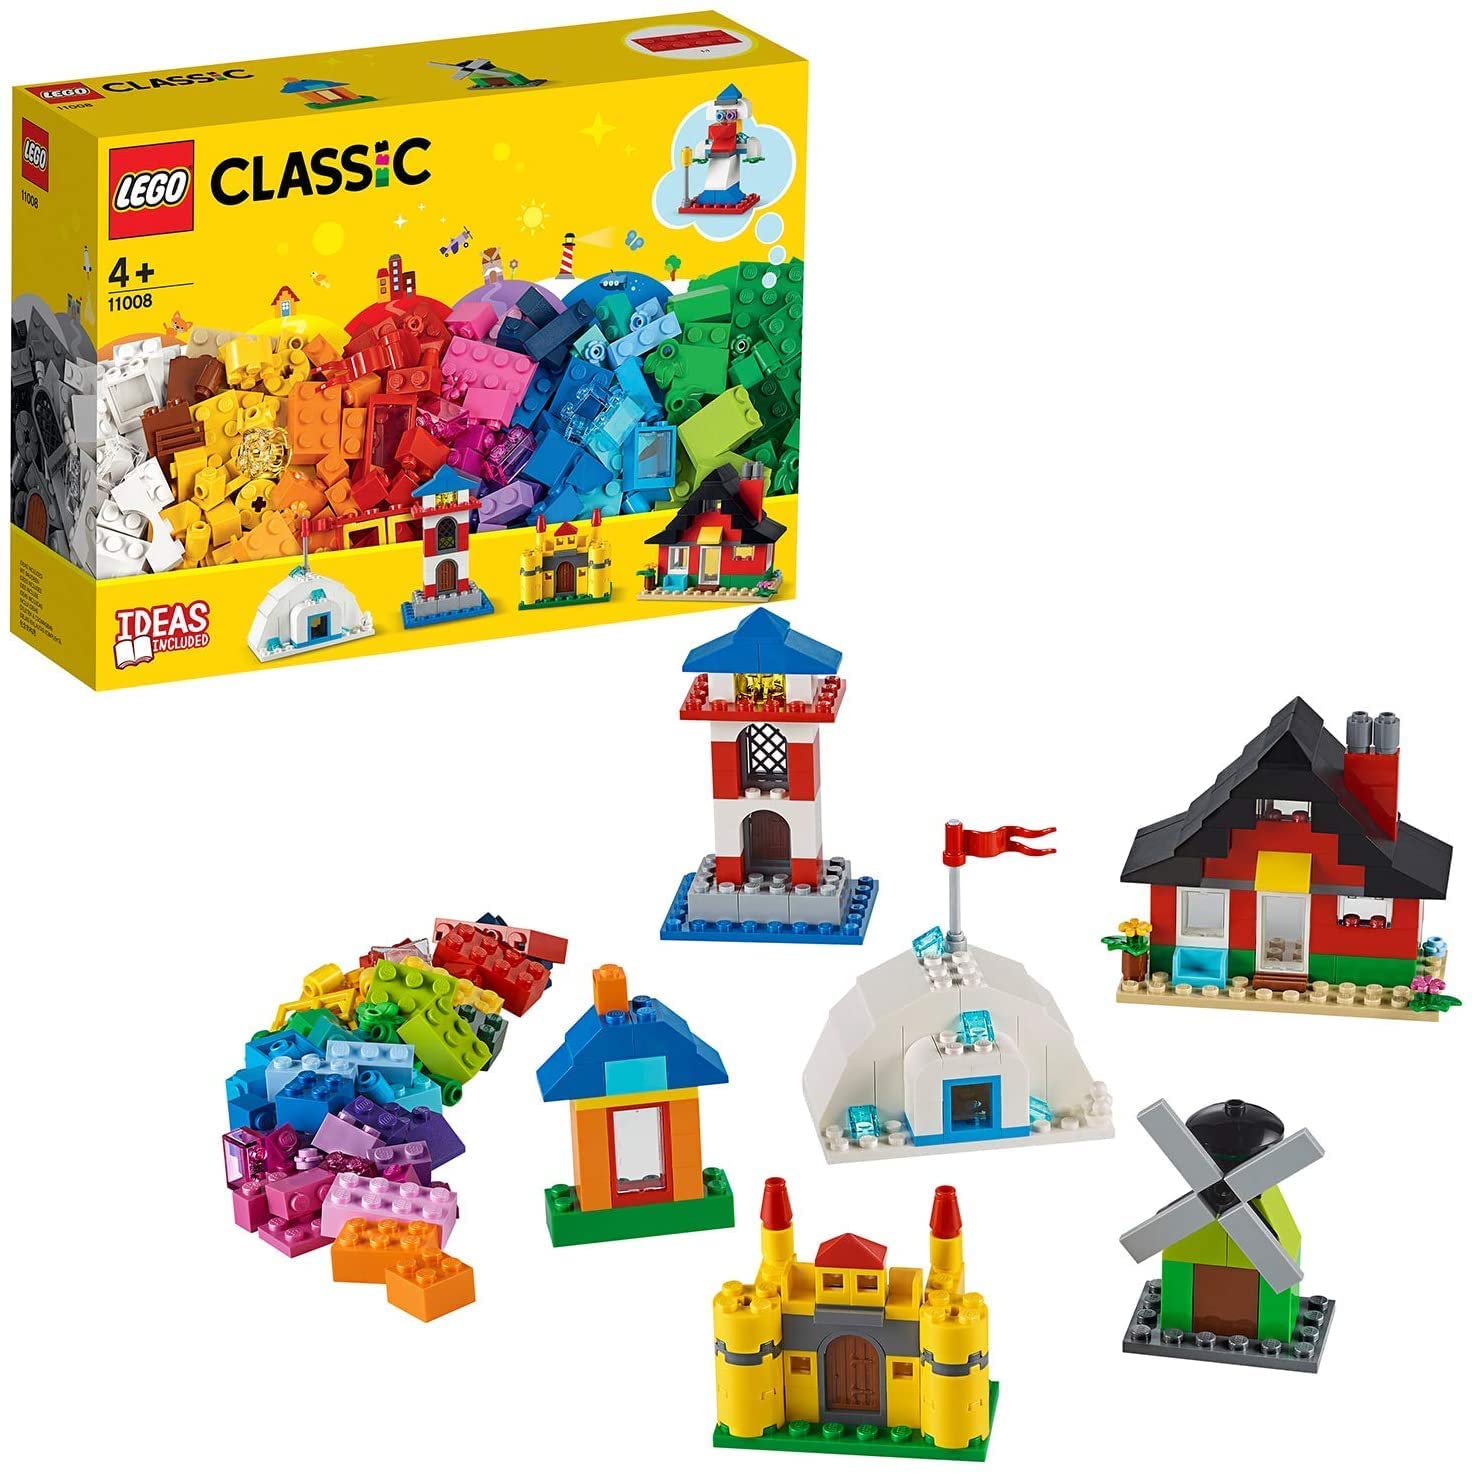 Jouet LEGO classic 11008 briques et maisons